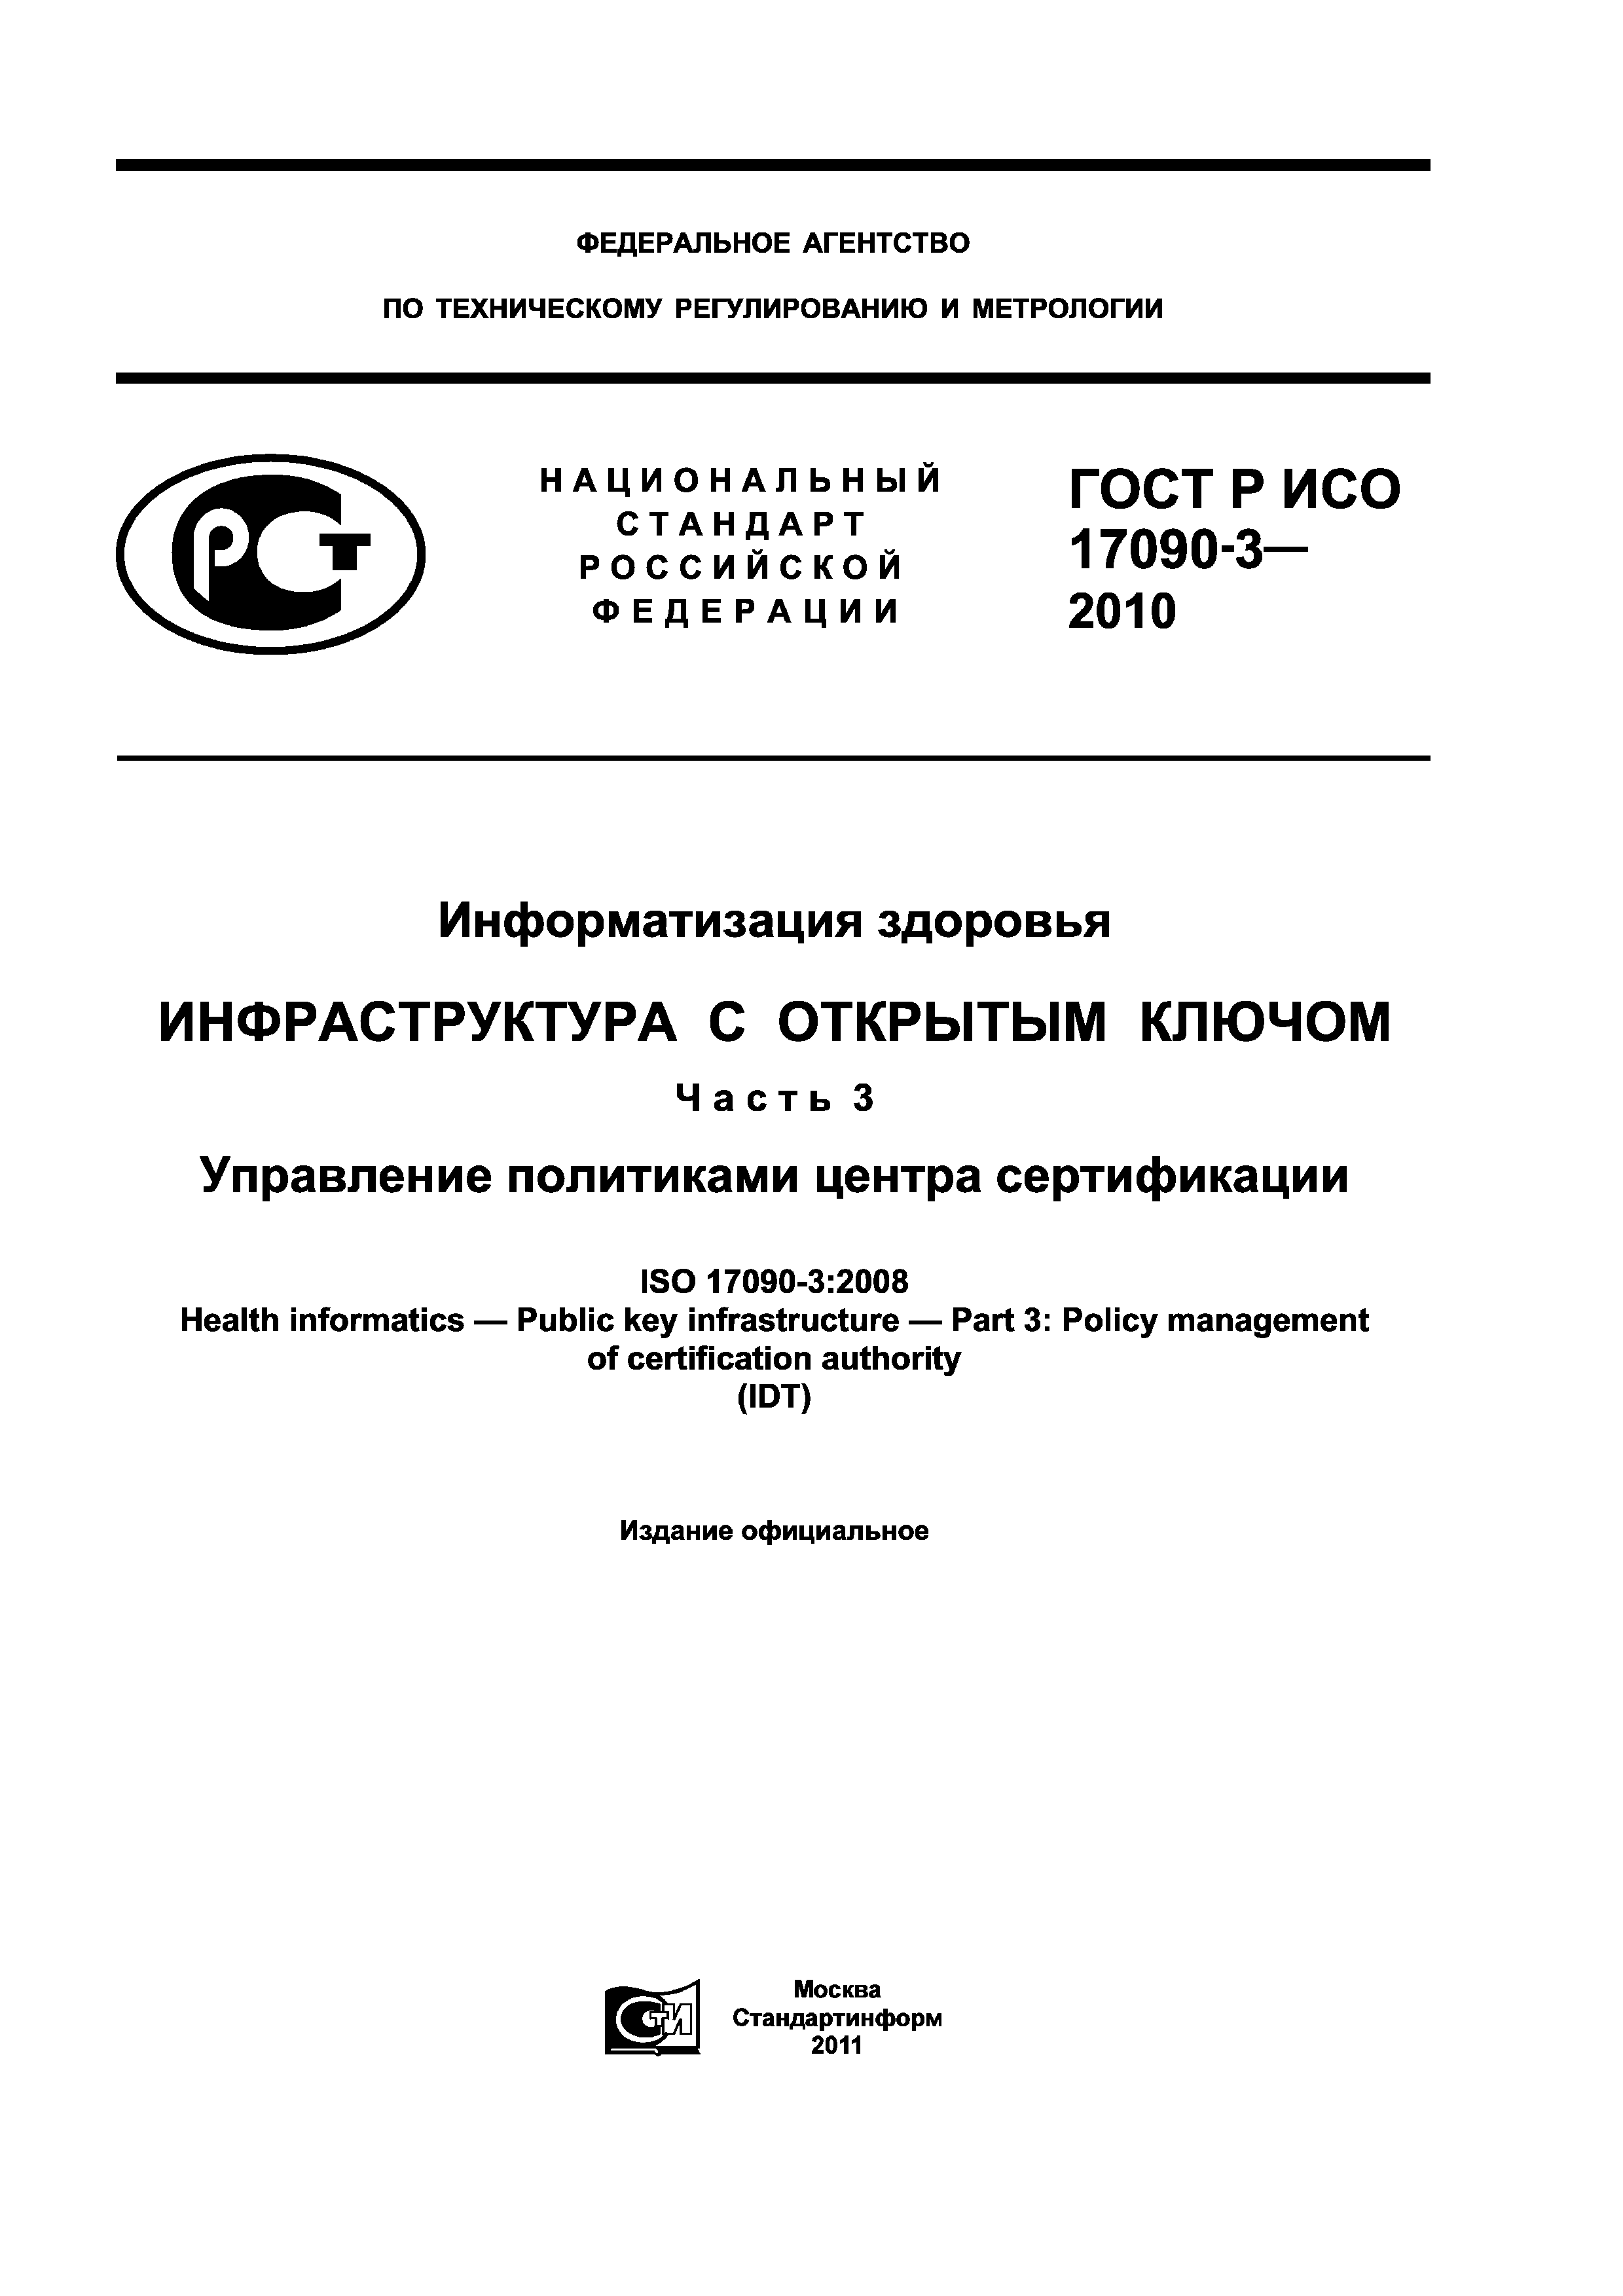 ГОСТ Р ИСО 17090-3-2010